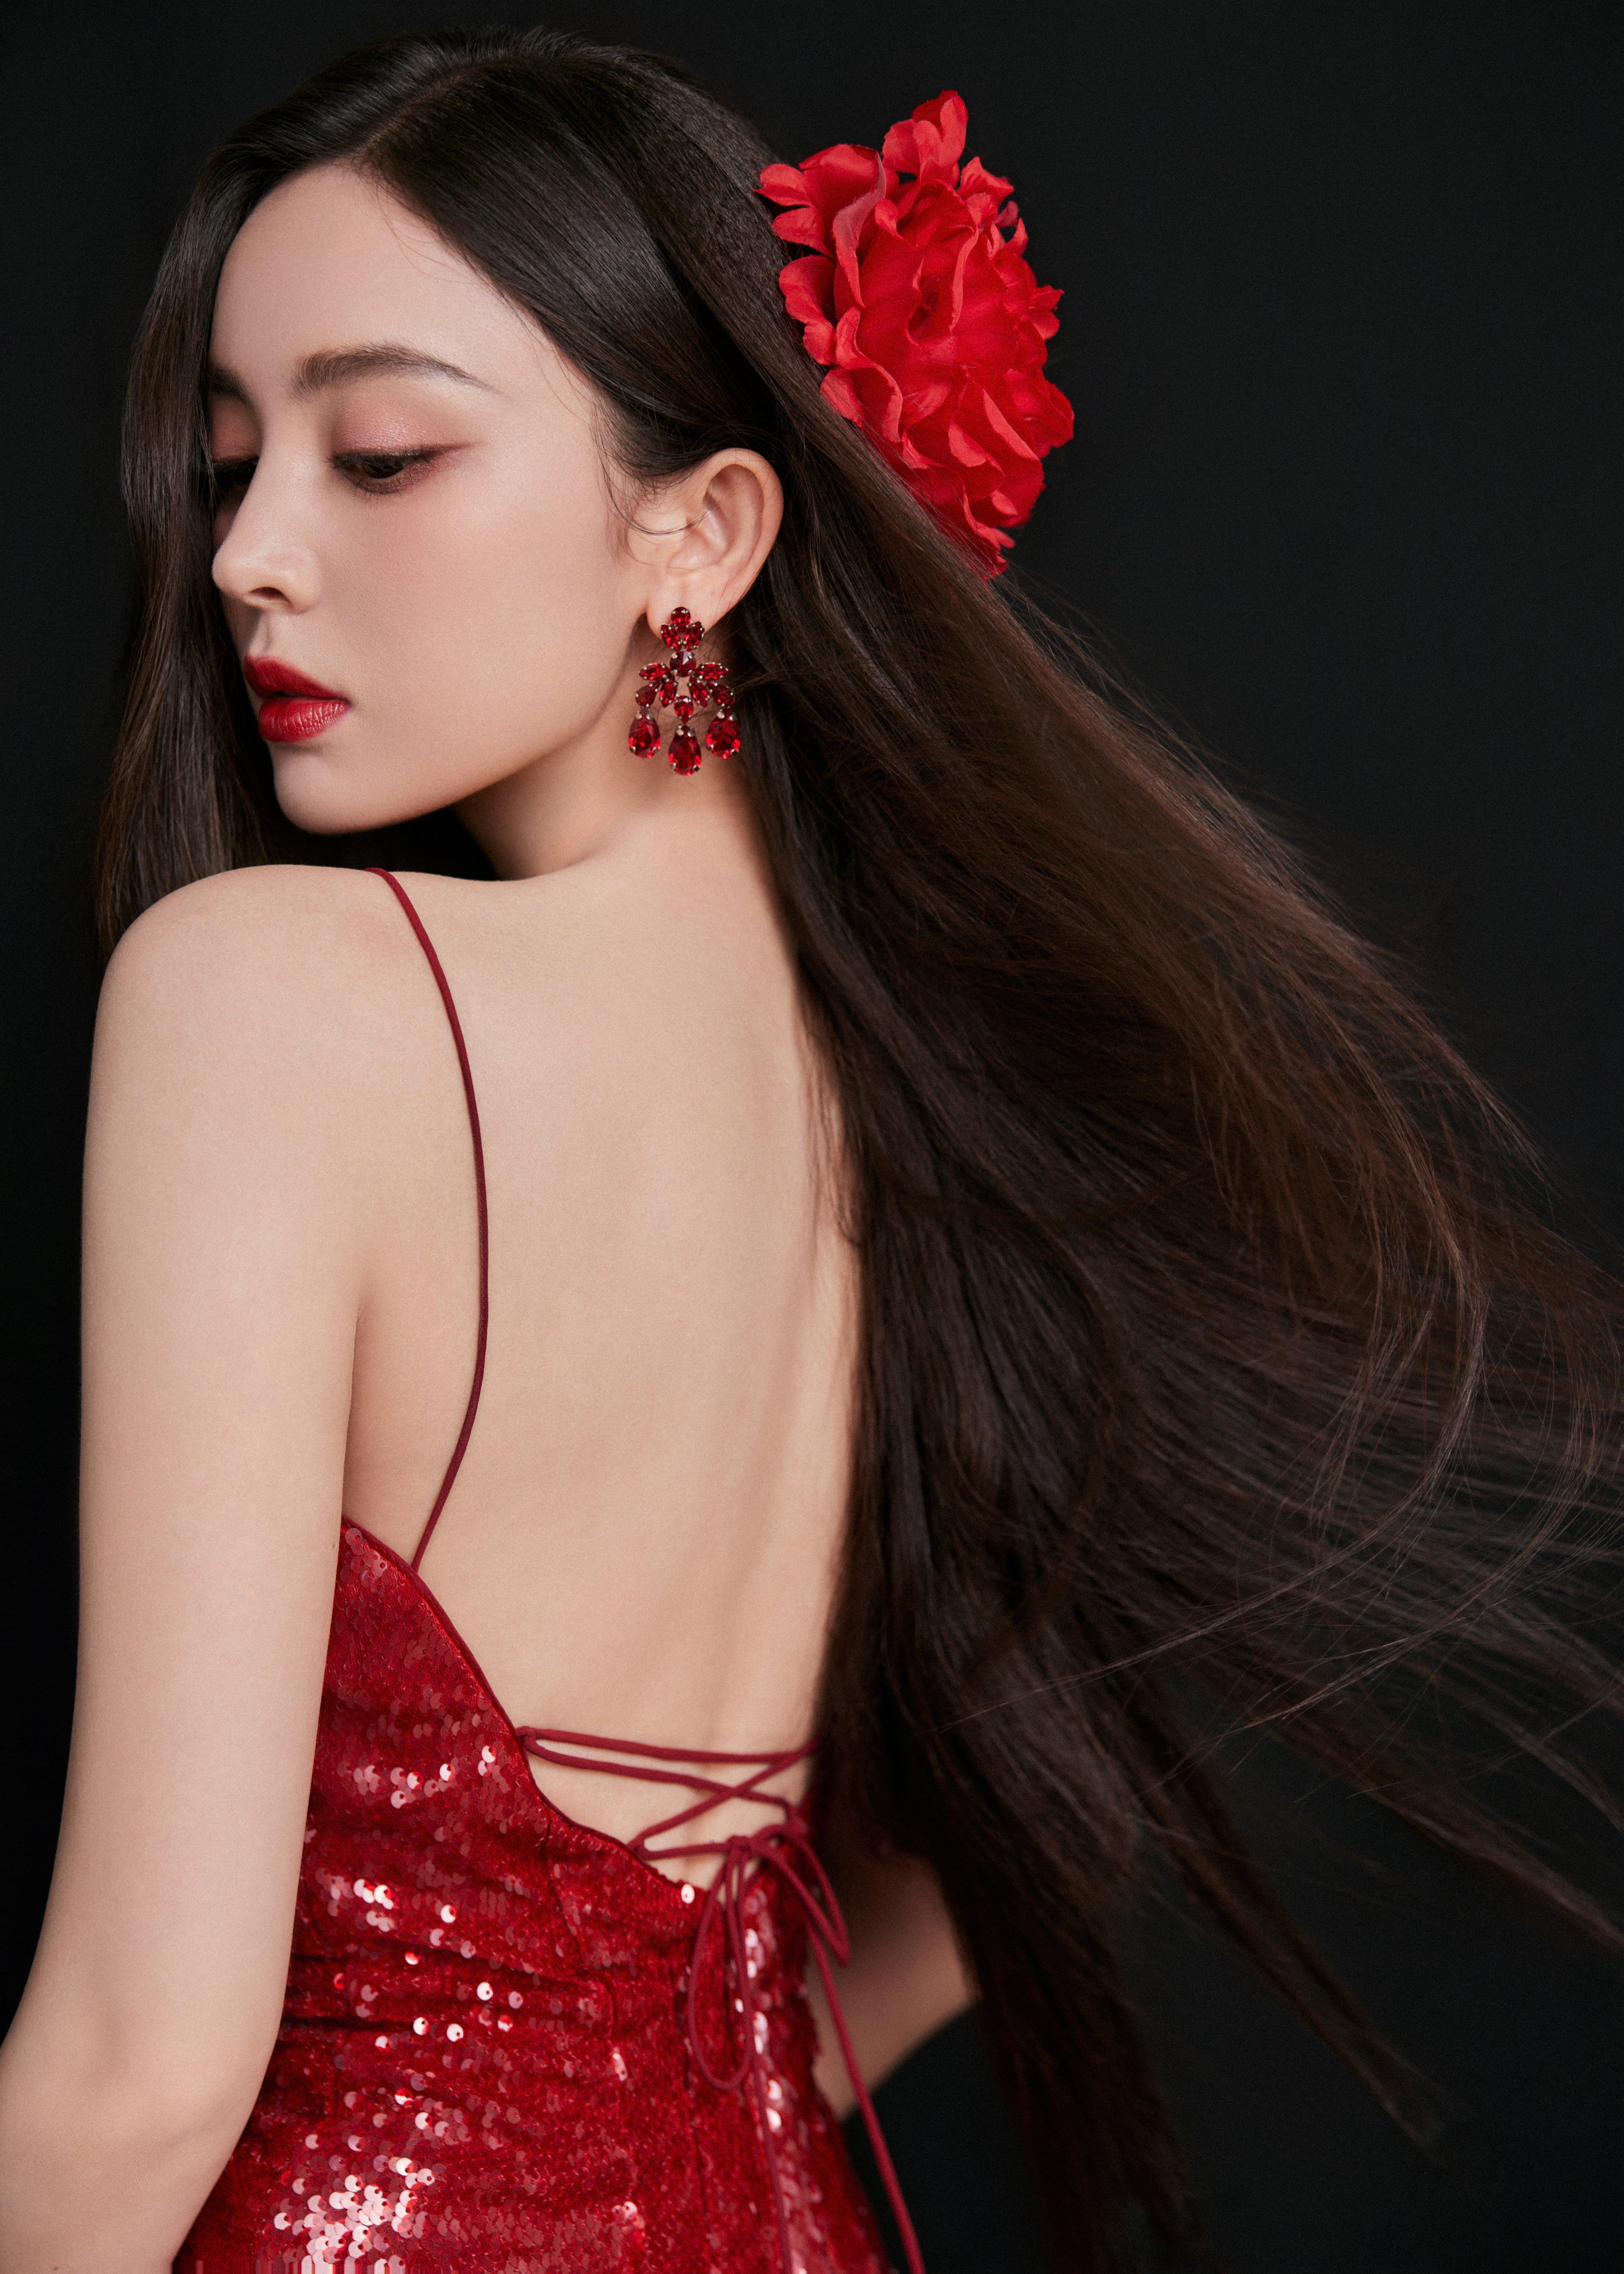 古力娜扎美照送达 红色吊带裸背礼服裙如明艳的红玫瑰,1 (8)